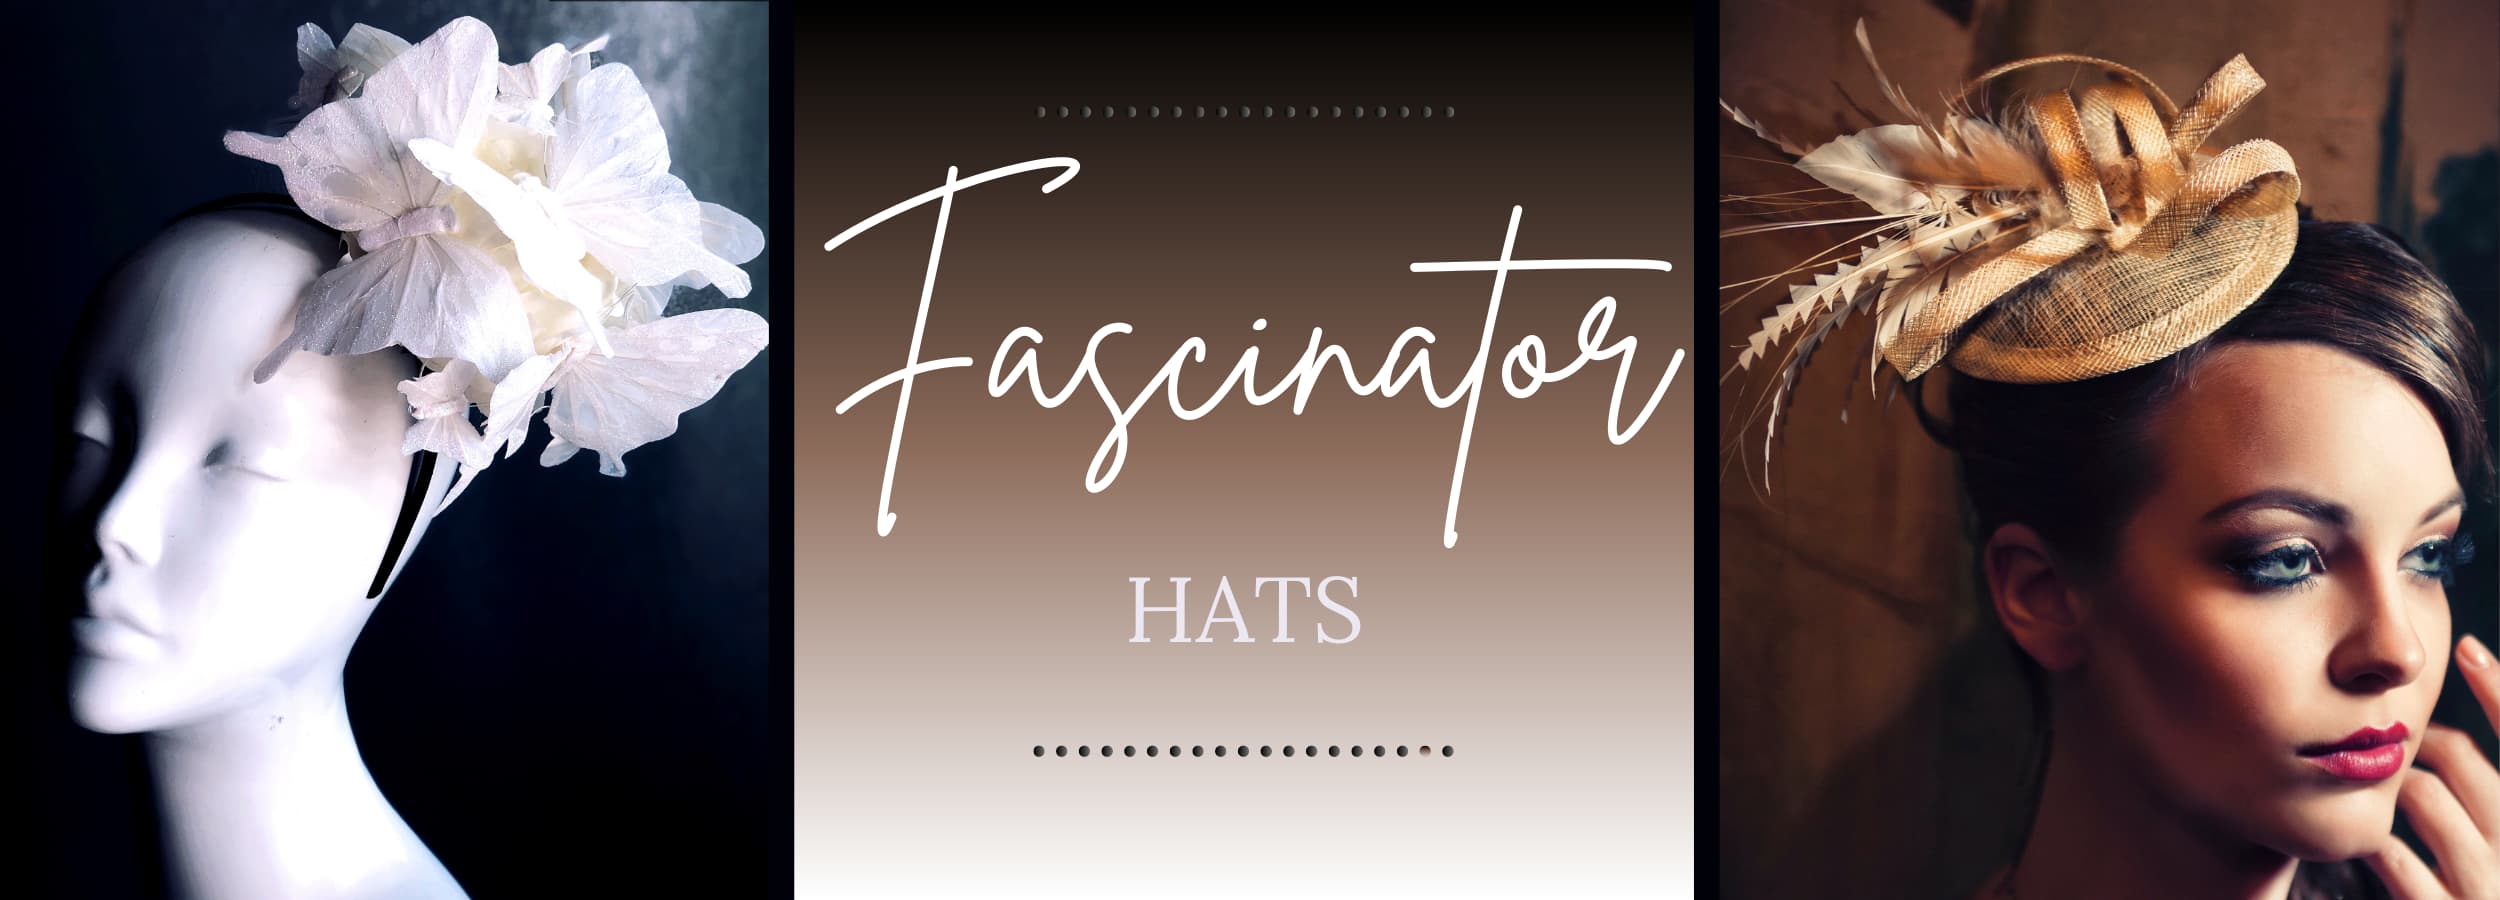 Women's Fascinator Hats